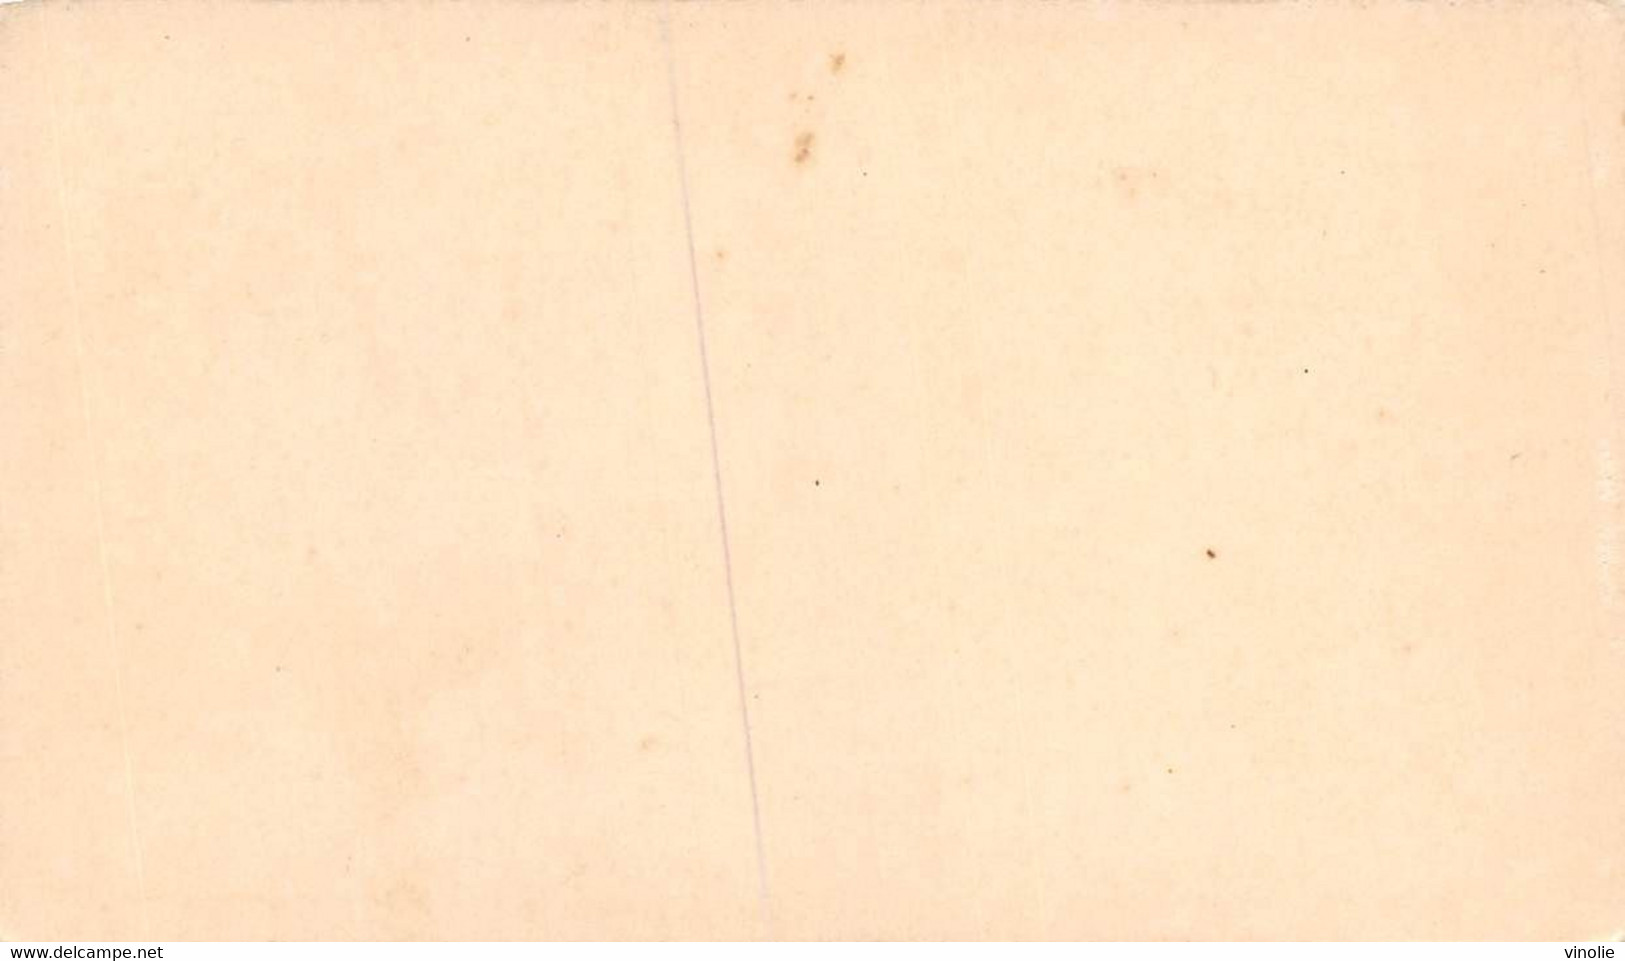 P.21-FO-1568 : IMAGE. CHROMOLITHOGRAPHIE. THEME MONNAIE. PIECE DE 2 FRANCS ARGENT. 1898 - Non Classés